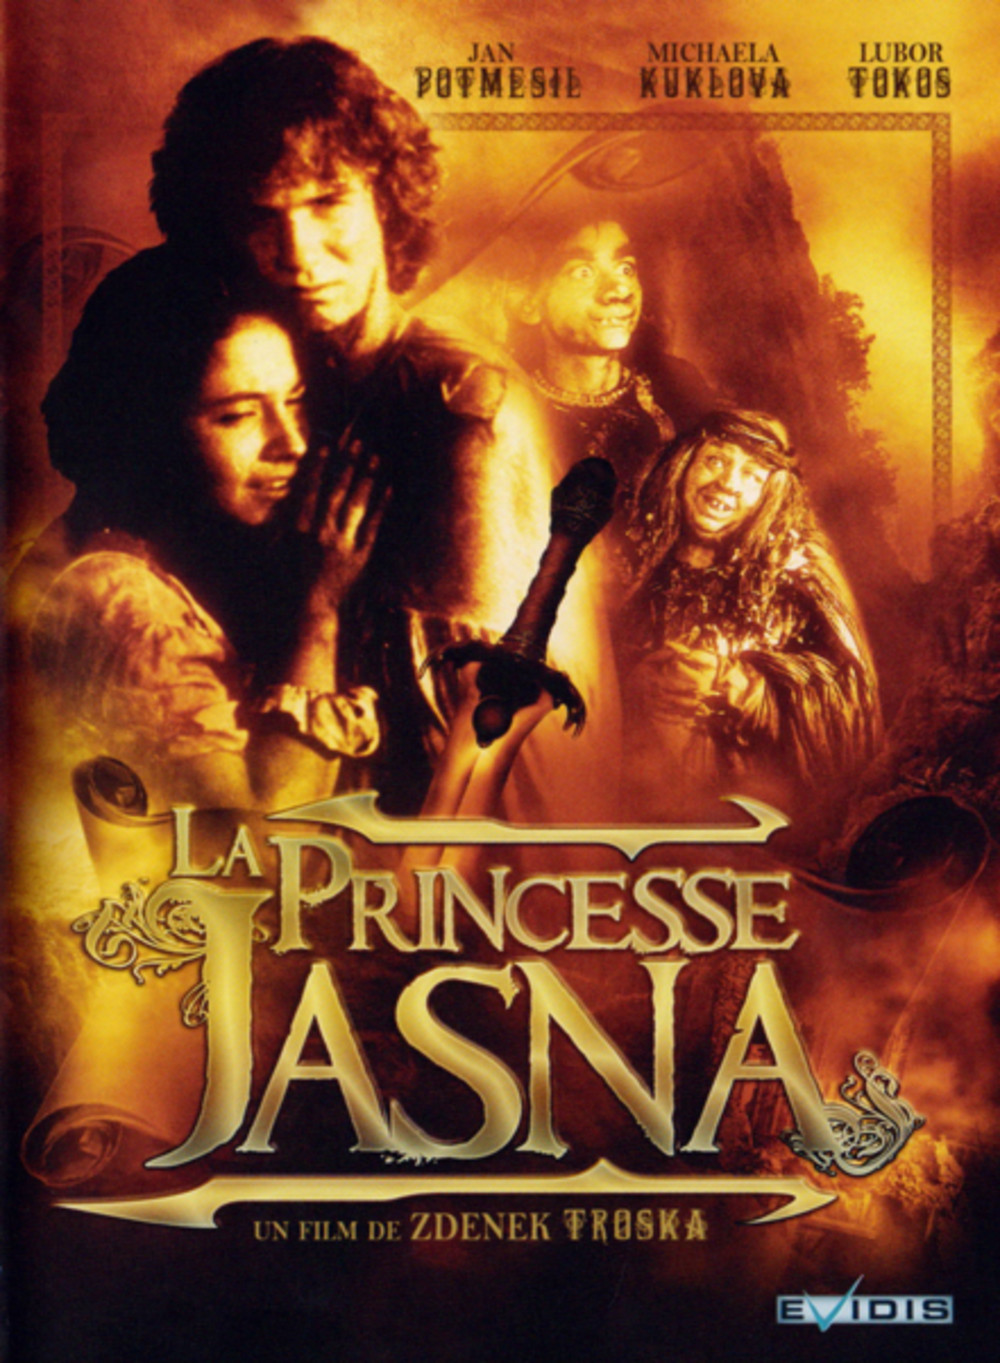 O princezne Jasnence a létajícím sevci (1987) Screenshot 2 